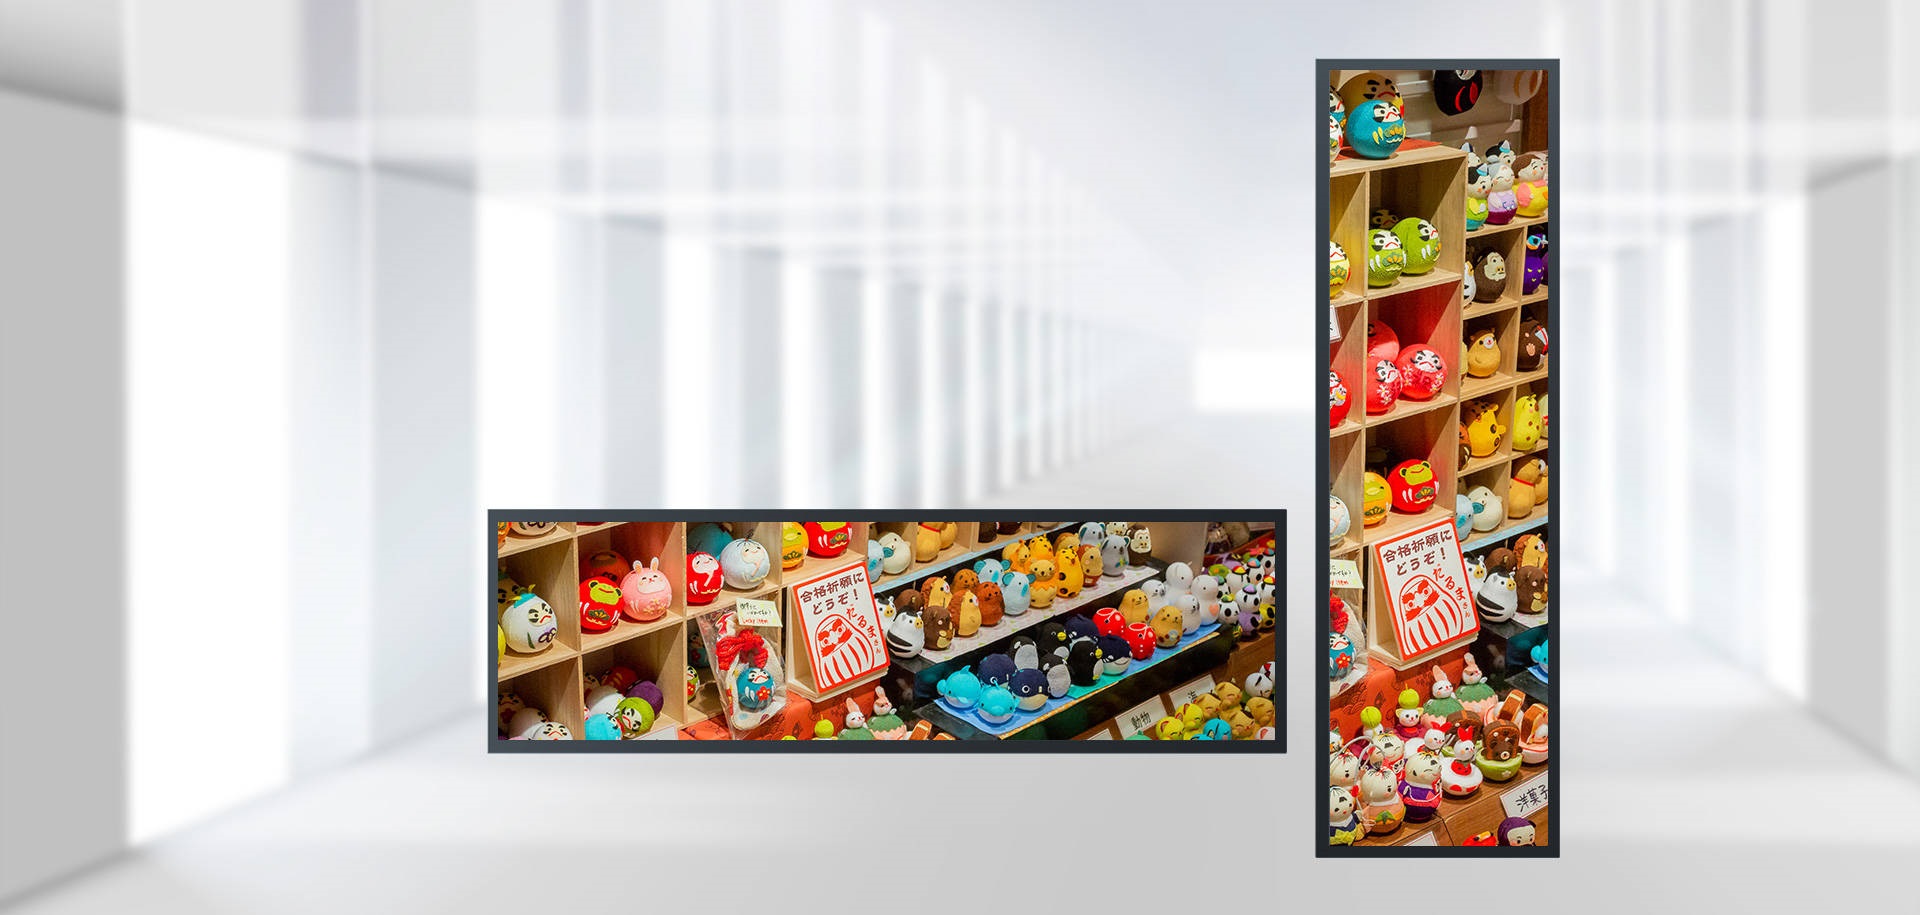 Nilai aplikasi pamuter pariwara layar bar LCD ing supermarket gedhe